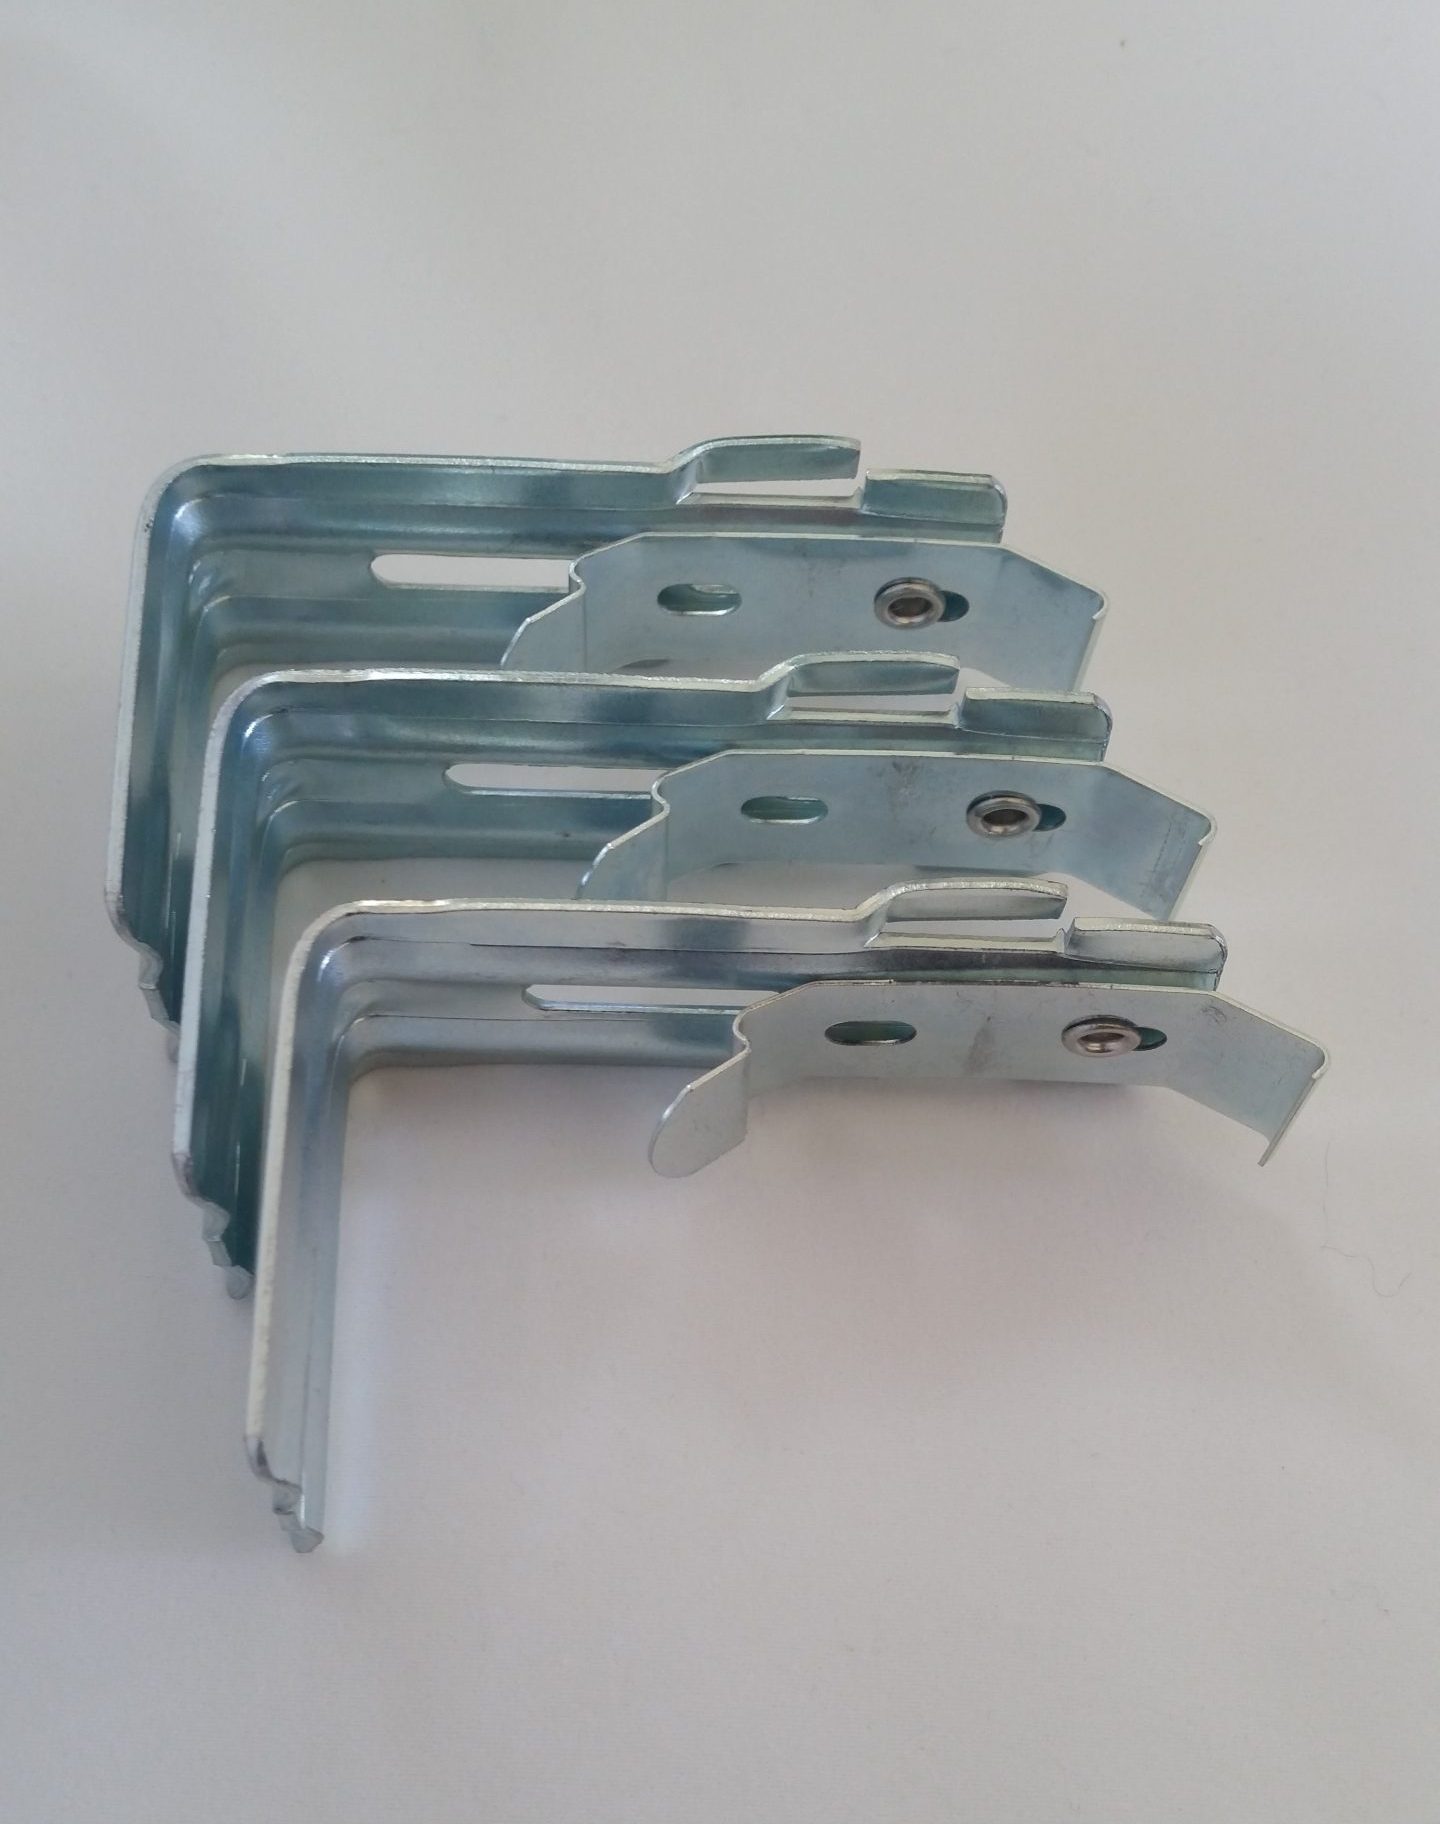 3" Adjustable Details about   Set of 3 Aluminum Valance L Brackets for Vertical Blinds 